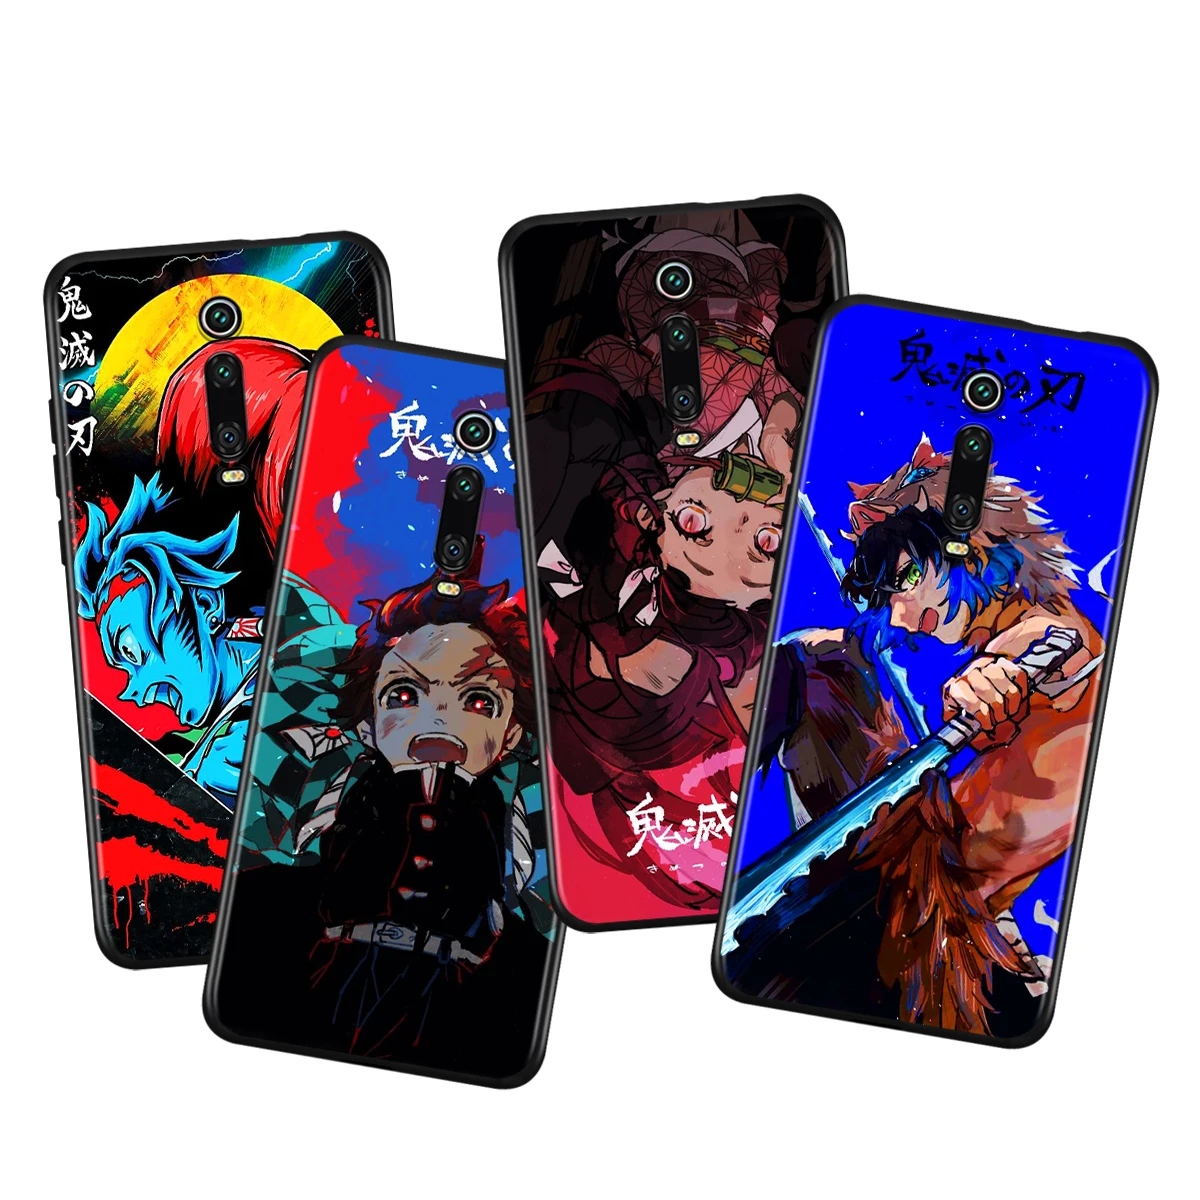 

Anime Demon Slayer Kimetsu no Yaiba For Xiaomi Redmi 9i 9T 9A 9C 9 8A 8 GO 7 7A S2 Y2 6 6A 5 5A 4X Prime Pro Plus Phone Case